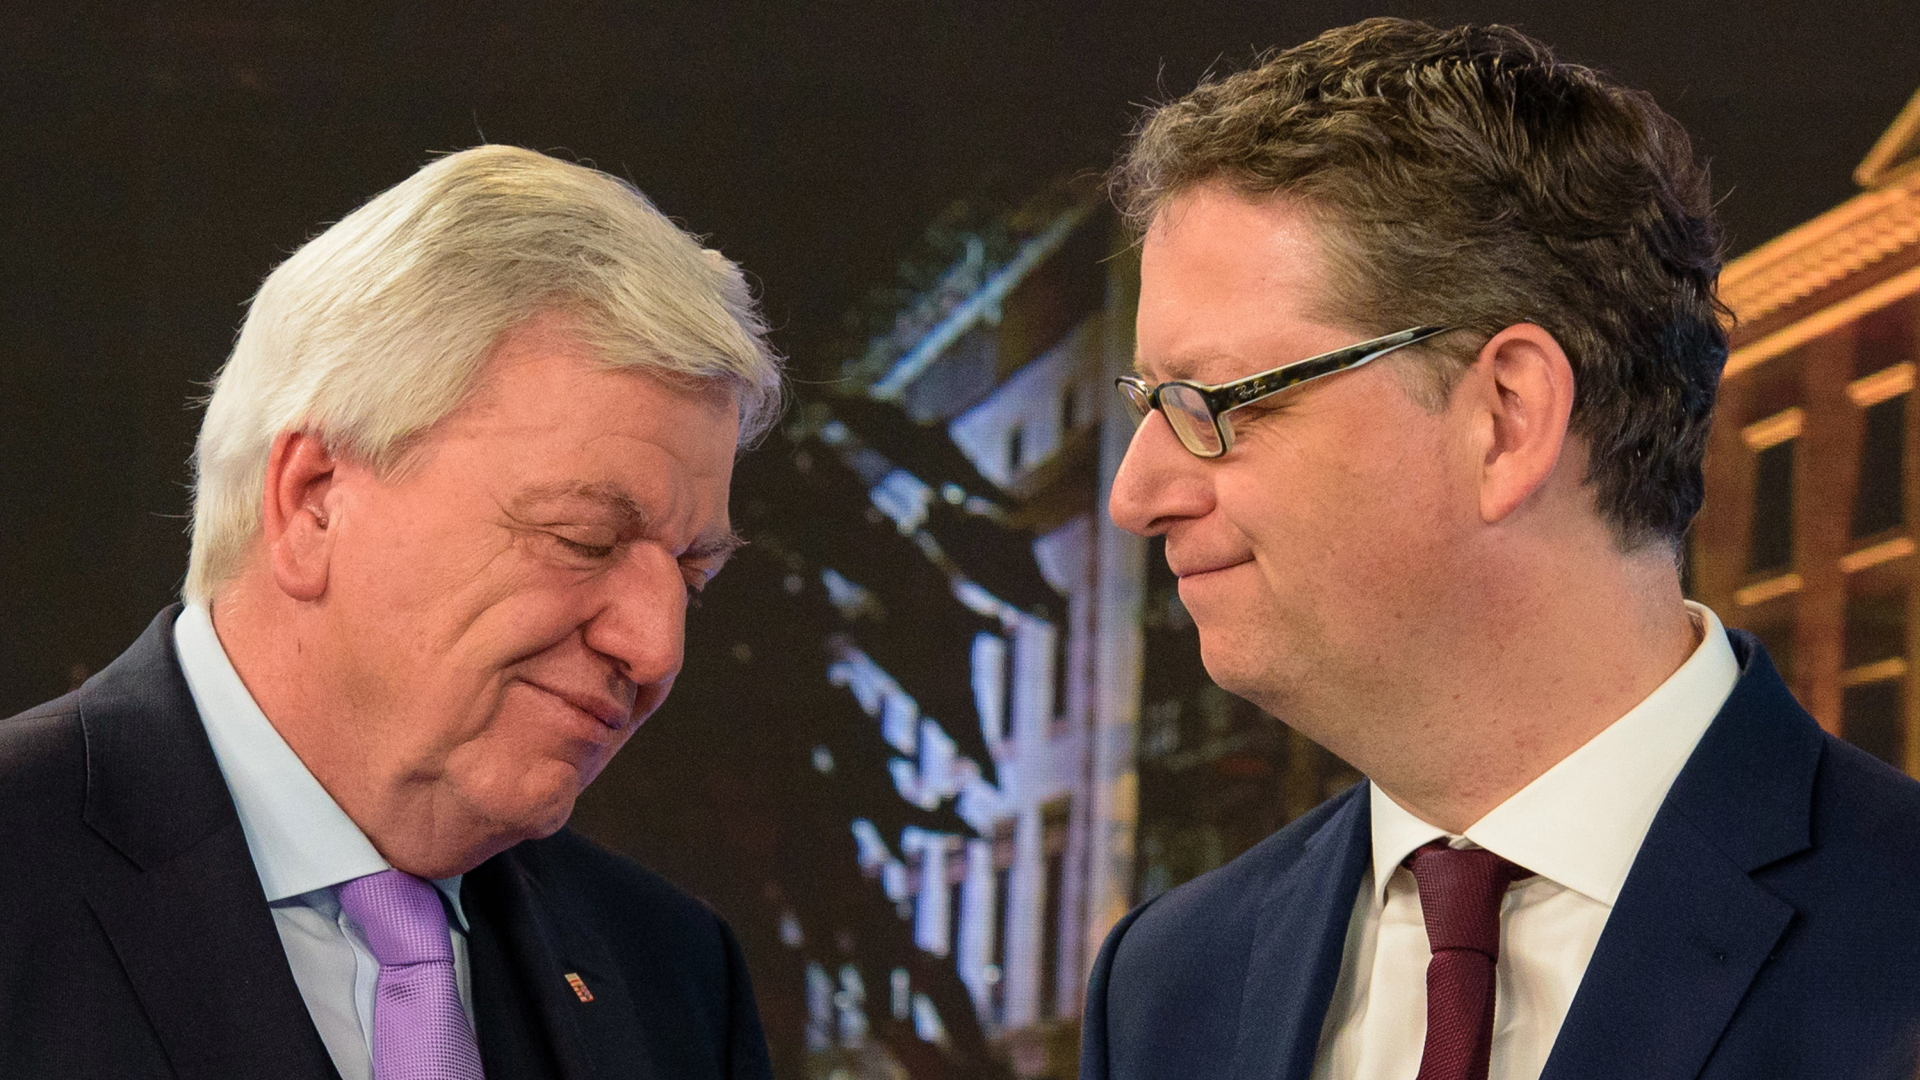 Die Spitzenkandidaten der Parteien Thorsten Schäfer-Gümbel (SPD,r) und Volker Bouffier (CDU), Ministerpräsident von Hessen